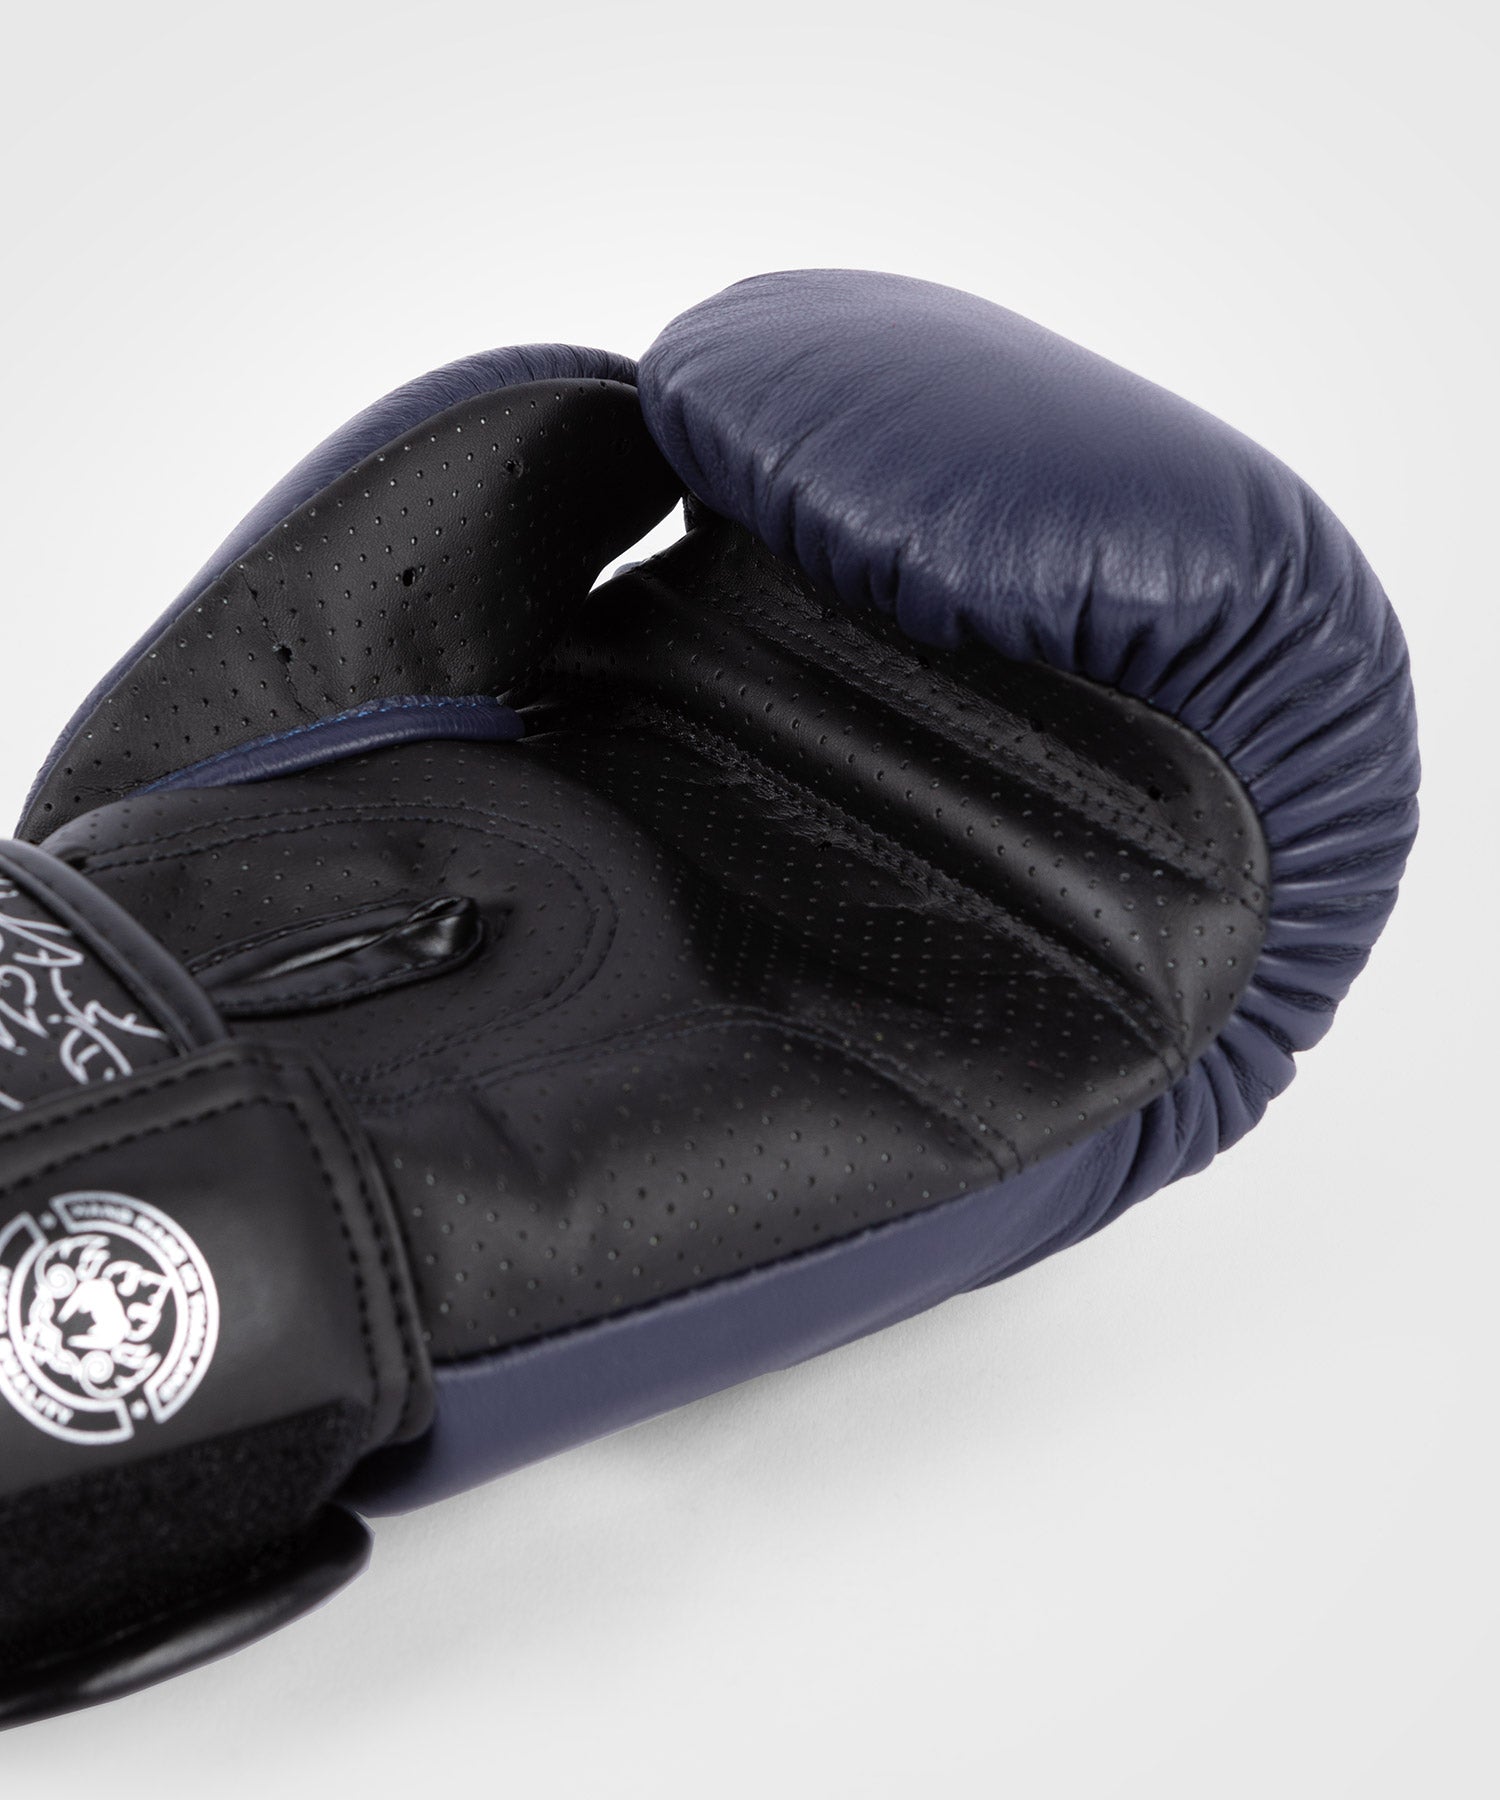 Gants de boxe Venum Power 2.0 - Noir/Argent